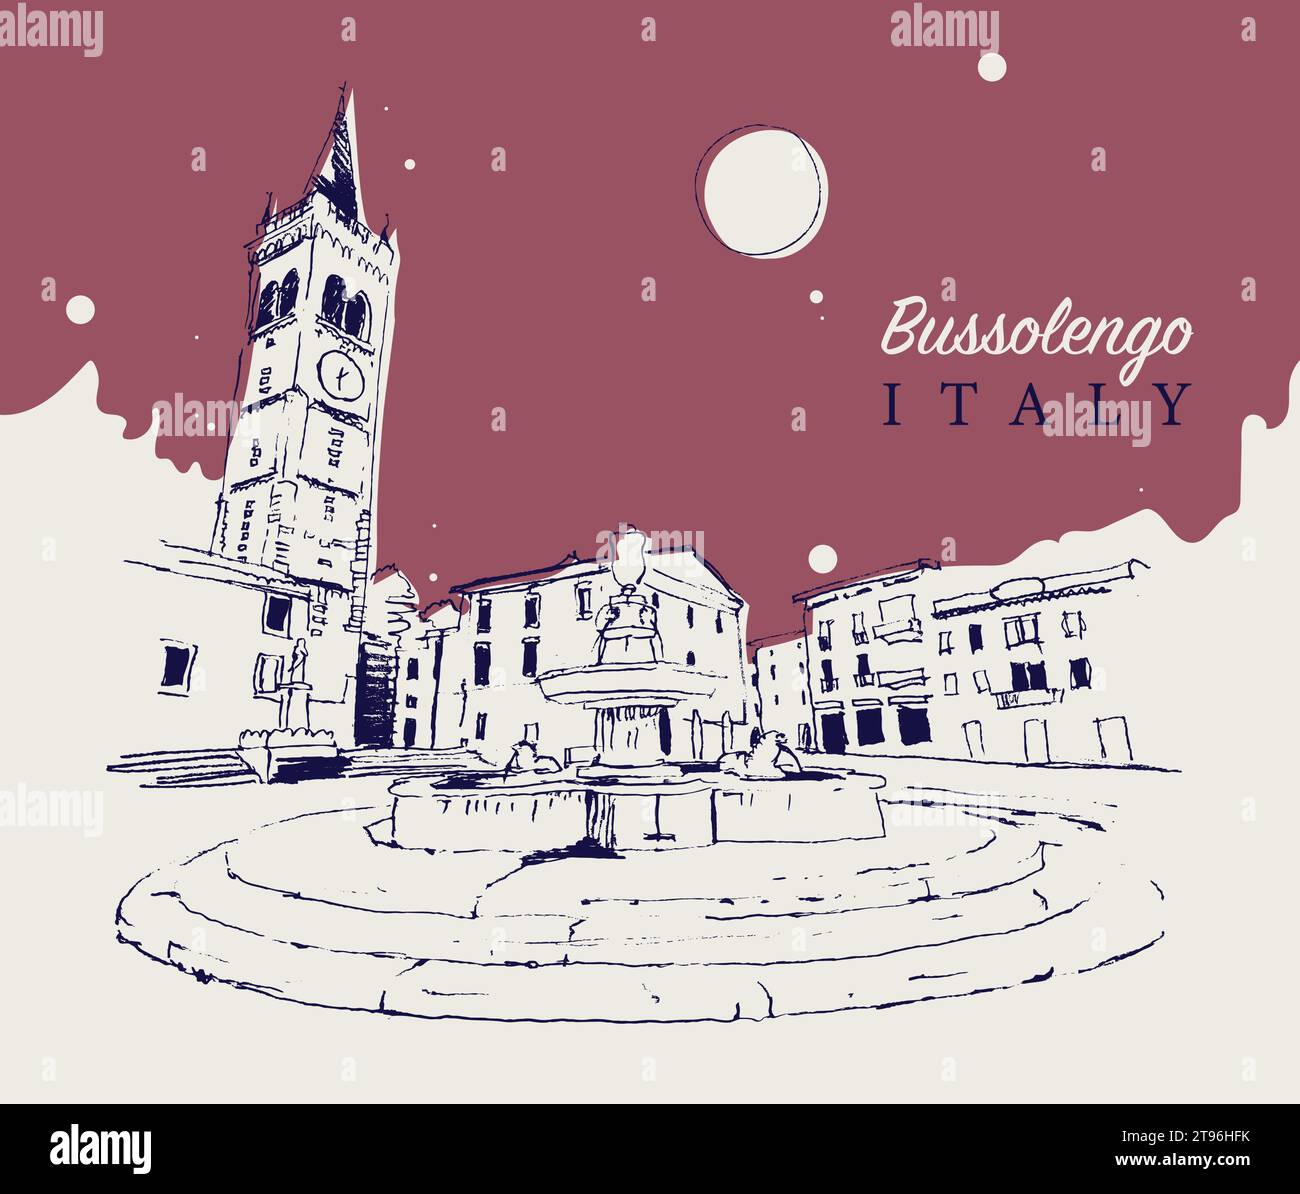 Illustrazione vettoriale di Bussolengo, città di Verona, provincia del Veneto, Italia. Illustrazione Vettoriale